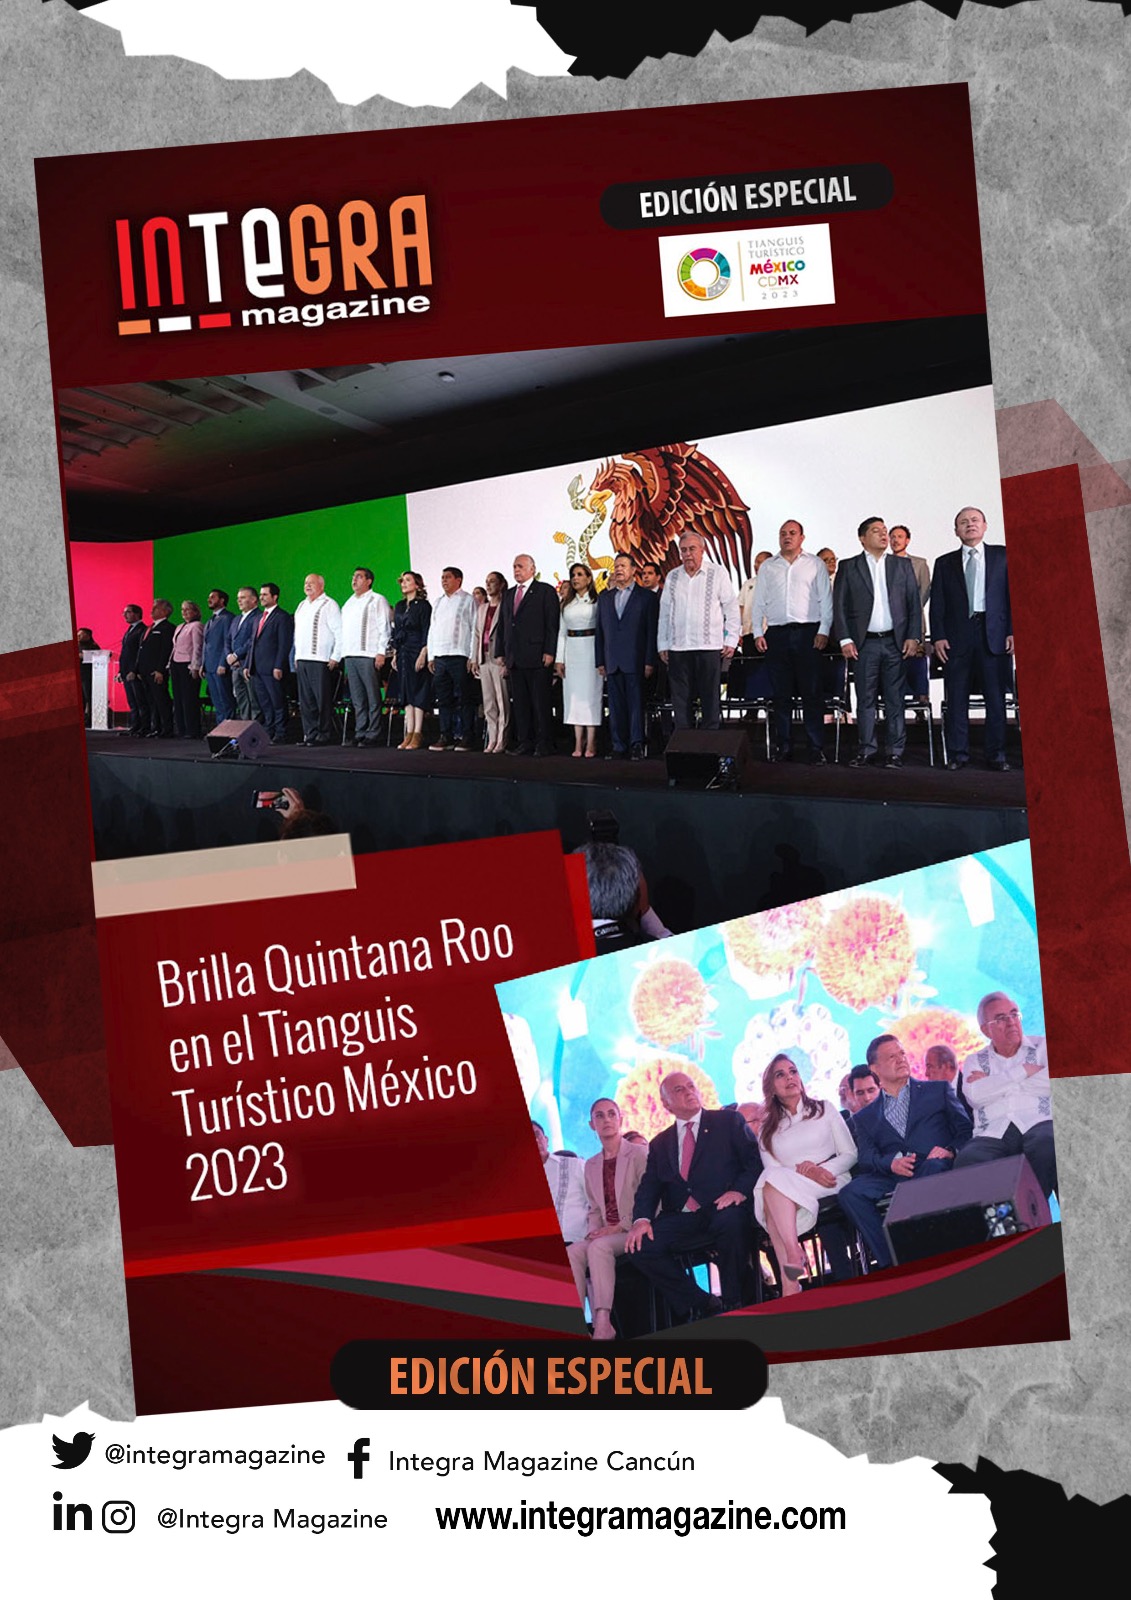 Edición especial Tianguis Turístico México 2023